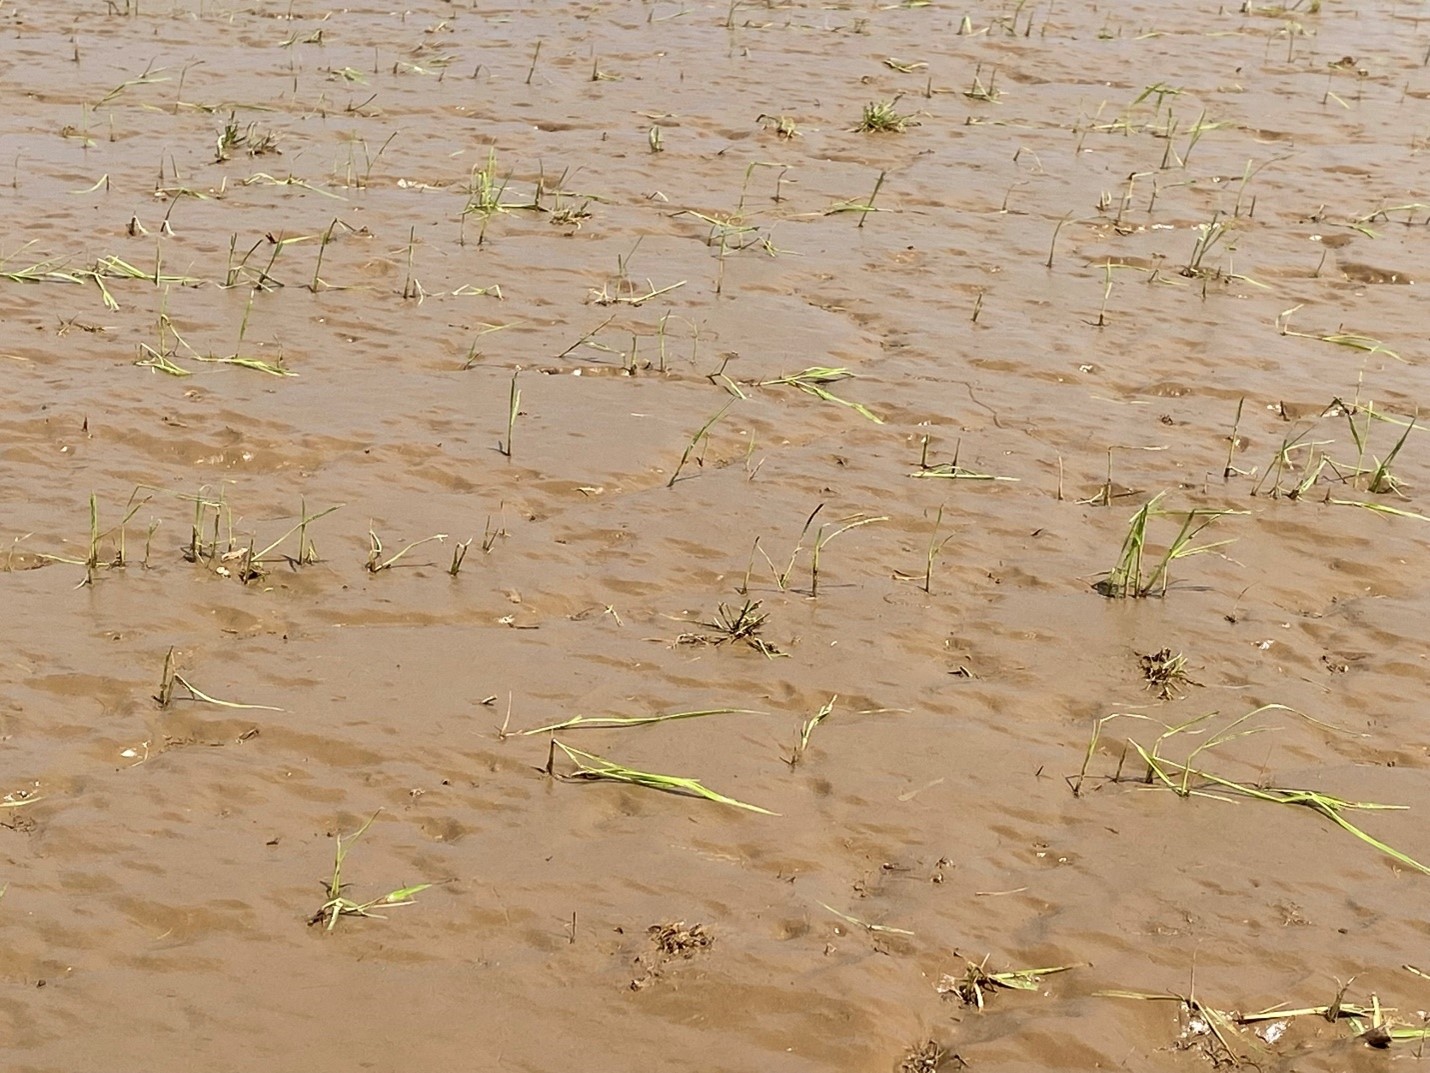 Hail damage to seedling rice